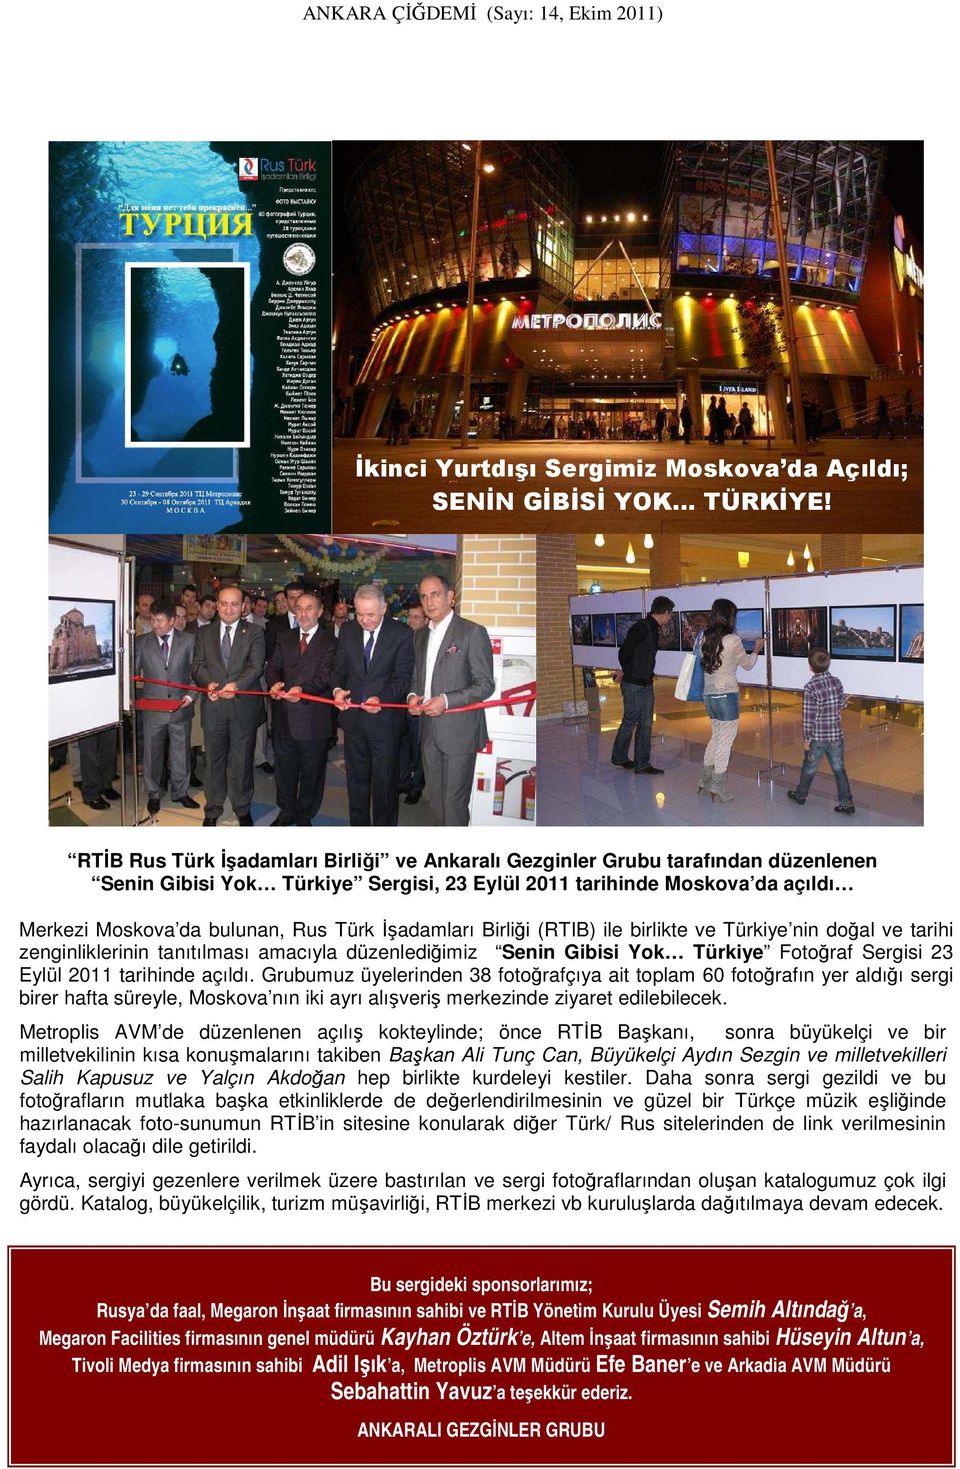 İşadamları Birliği (RTIB) ile birlikte ve Türkiye nin doğal ve tarihi zenginliklerinin tanıtılması amacıyla düzenlediğimiz Senin Gibisi Yok Türkiye Fotoğraf Sergisi 23 Eylül 2011 tarihinde açıldı.